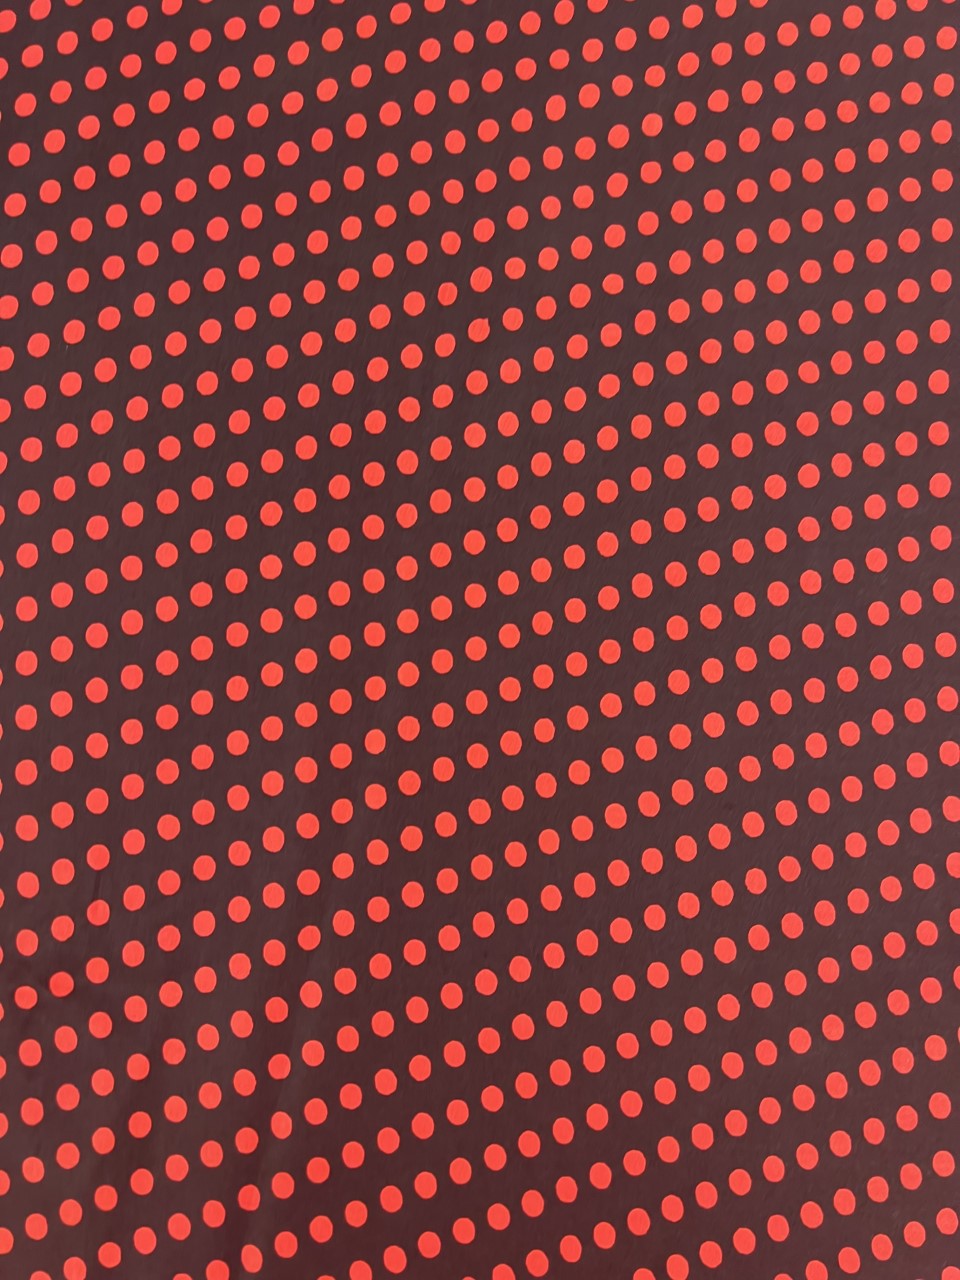 Satin Black/Red Polka Dot